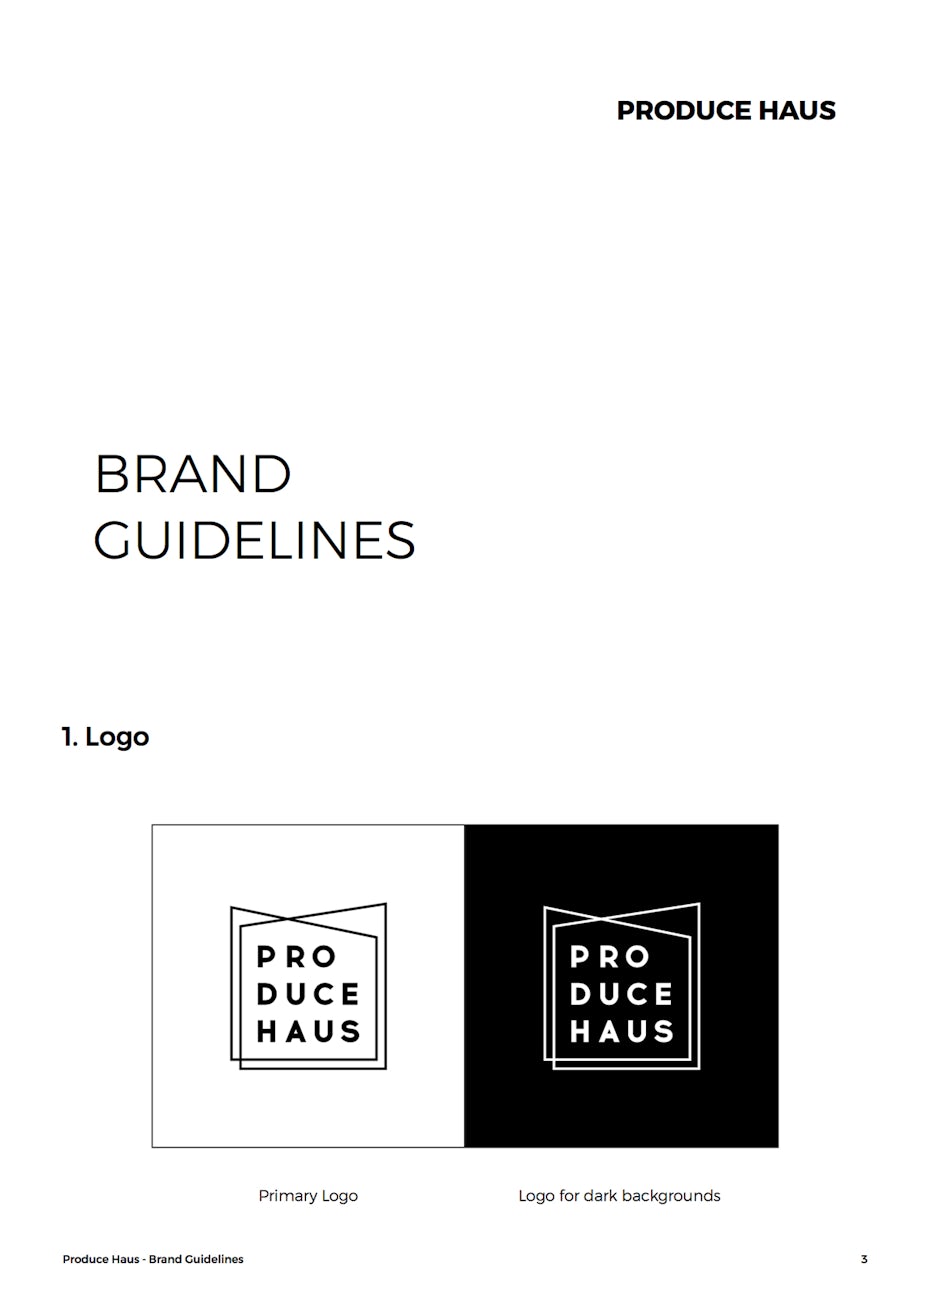 Pautas para marcas inspirardoras - Guía de estilo de la marca PRODUCE HAUS